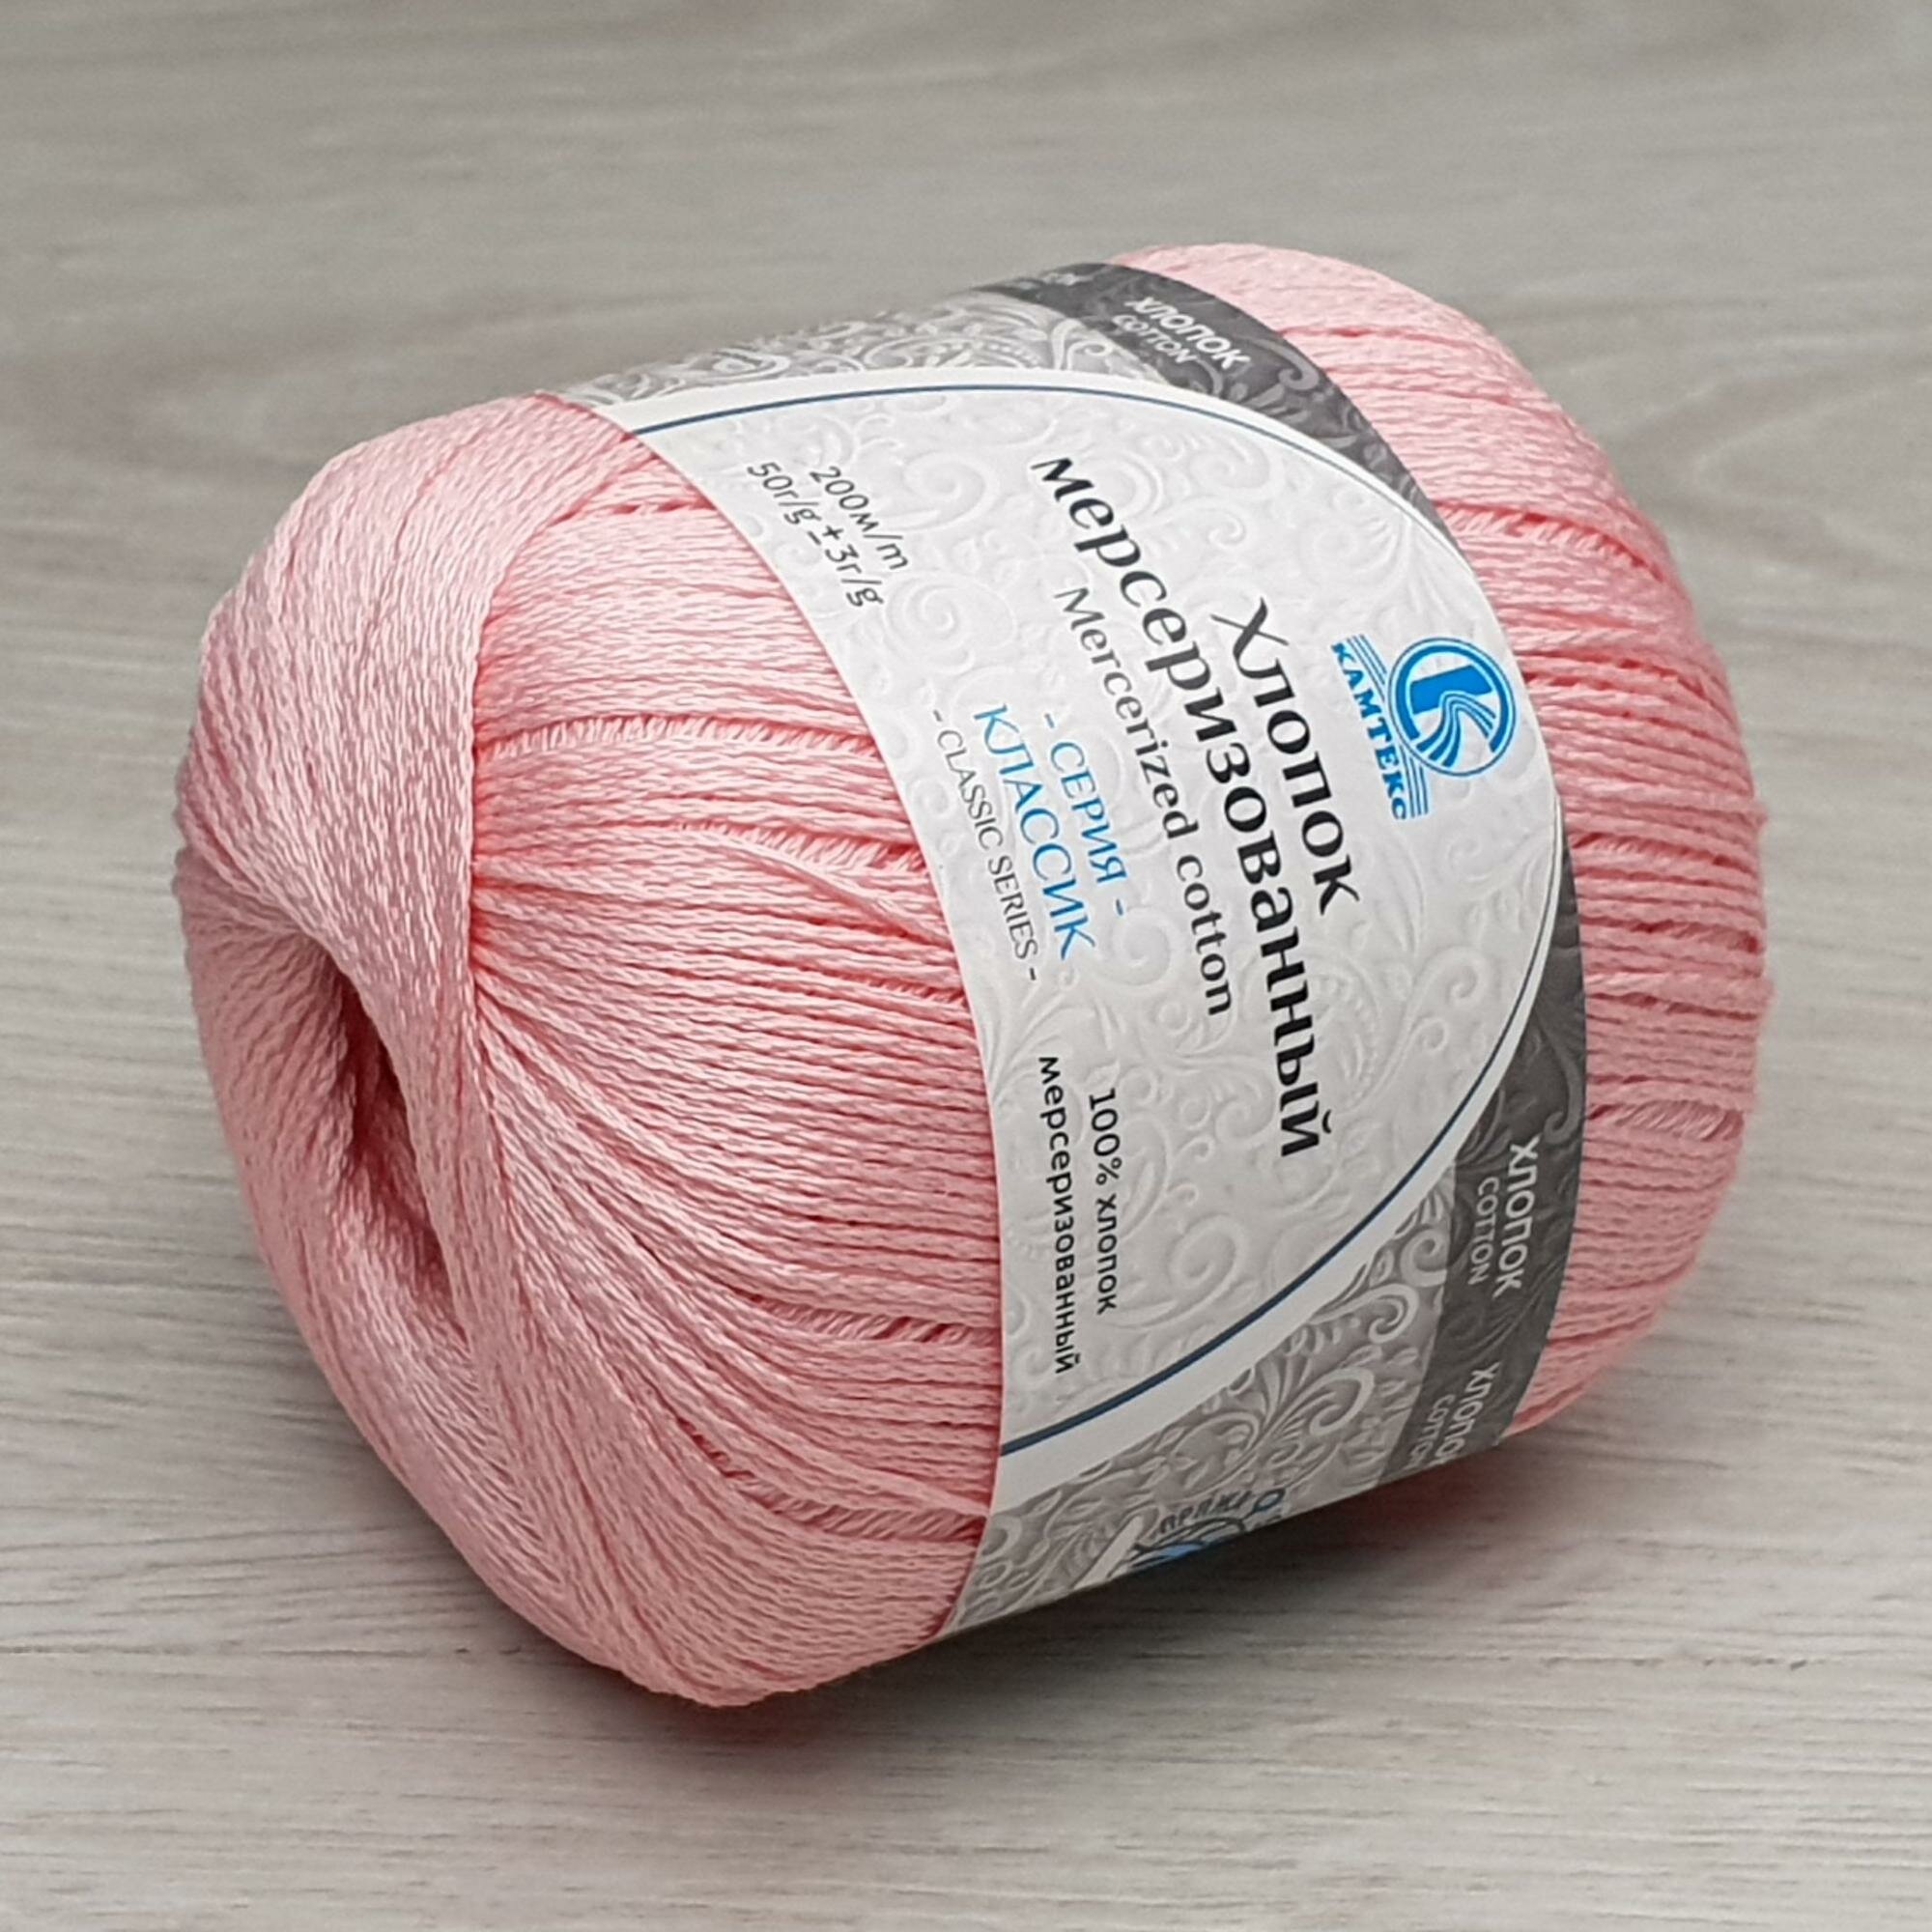 Пряжа Хлопок Мерсеризованный (Камтекс), розовый - 056, 100% мерсеризованный хлопок, 10 мотков, 50 г, 200 м.